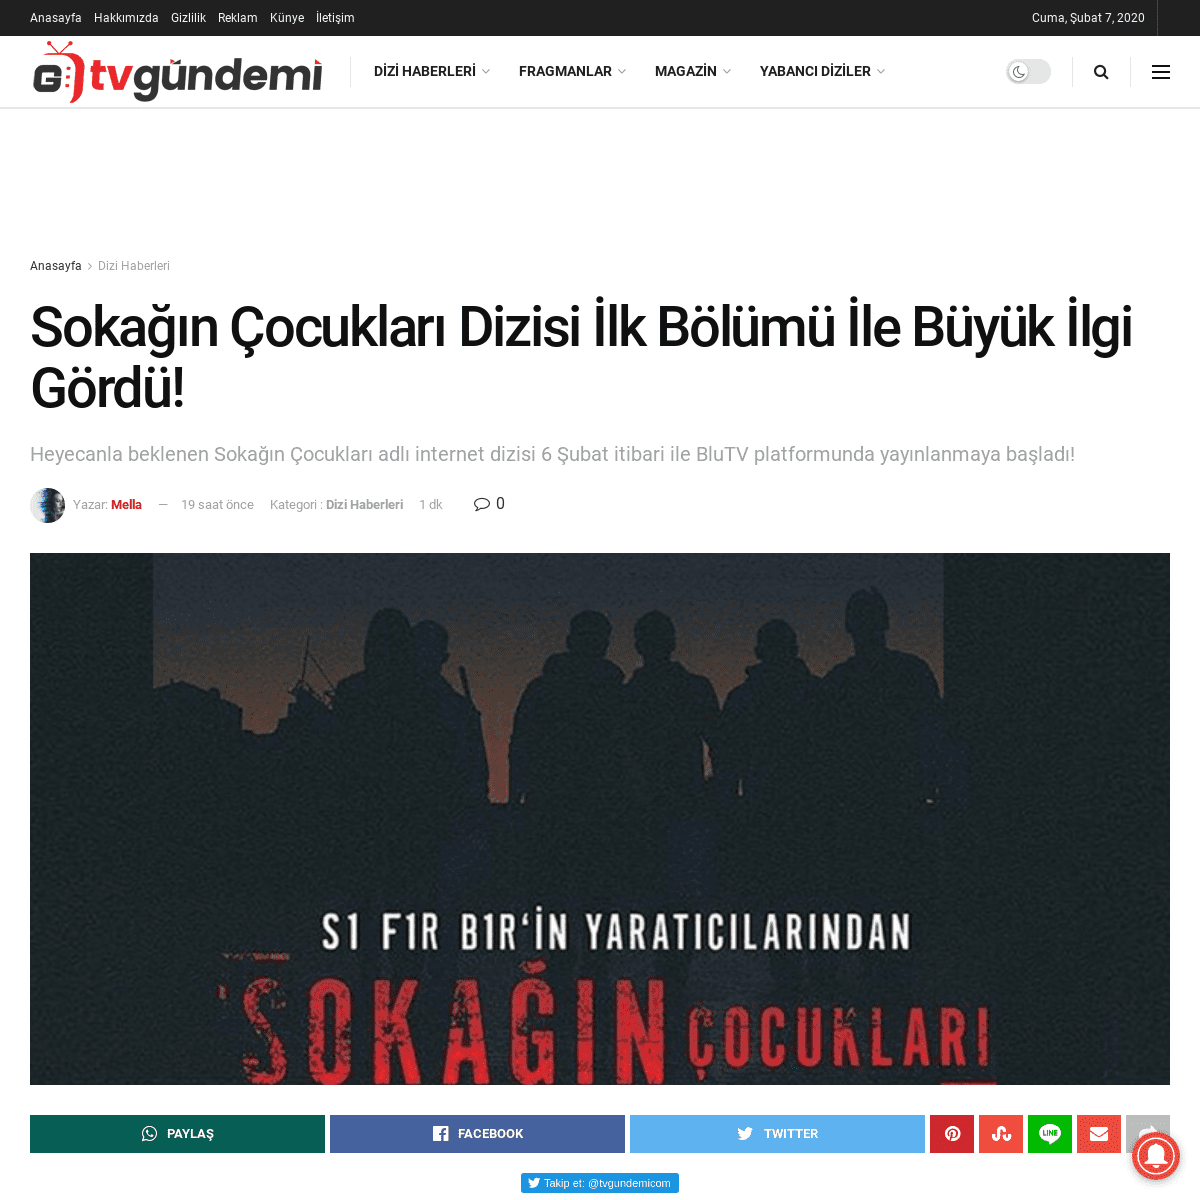 A complete backup of www.tvgundemi.com/dizi-haberleri/sokagin-cocuklari-dizisi-ilk-bolumu-ile-buyuk-ilgi-gordu-h20074.html